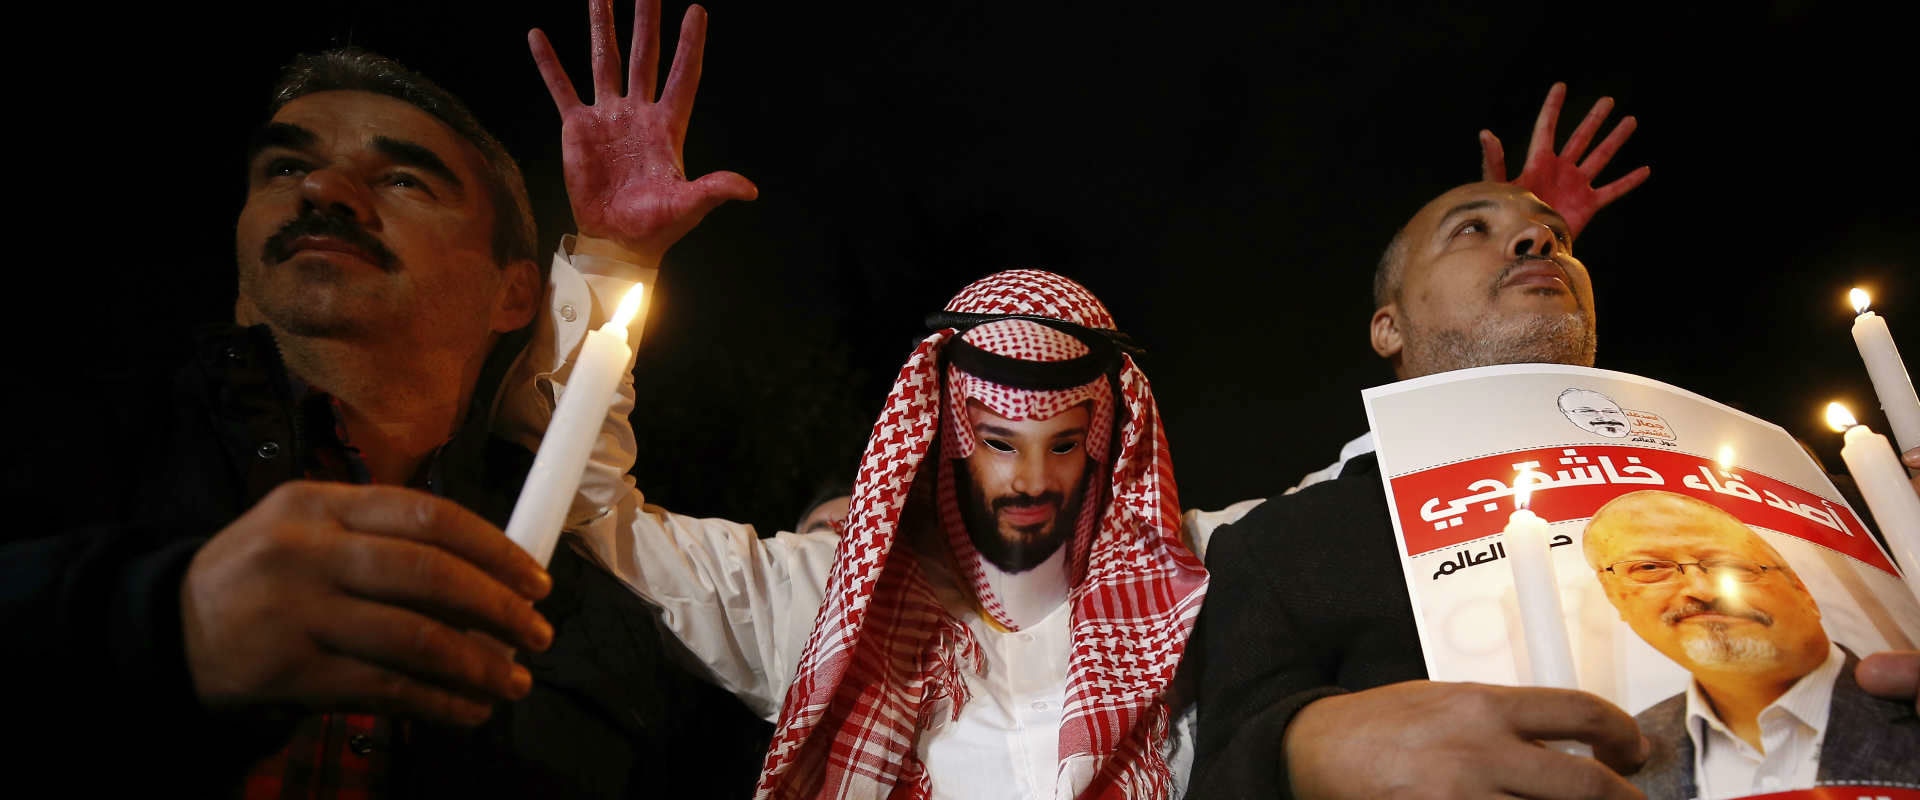 הפגנה נגד השלטון הסעודי